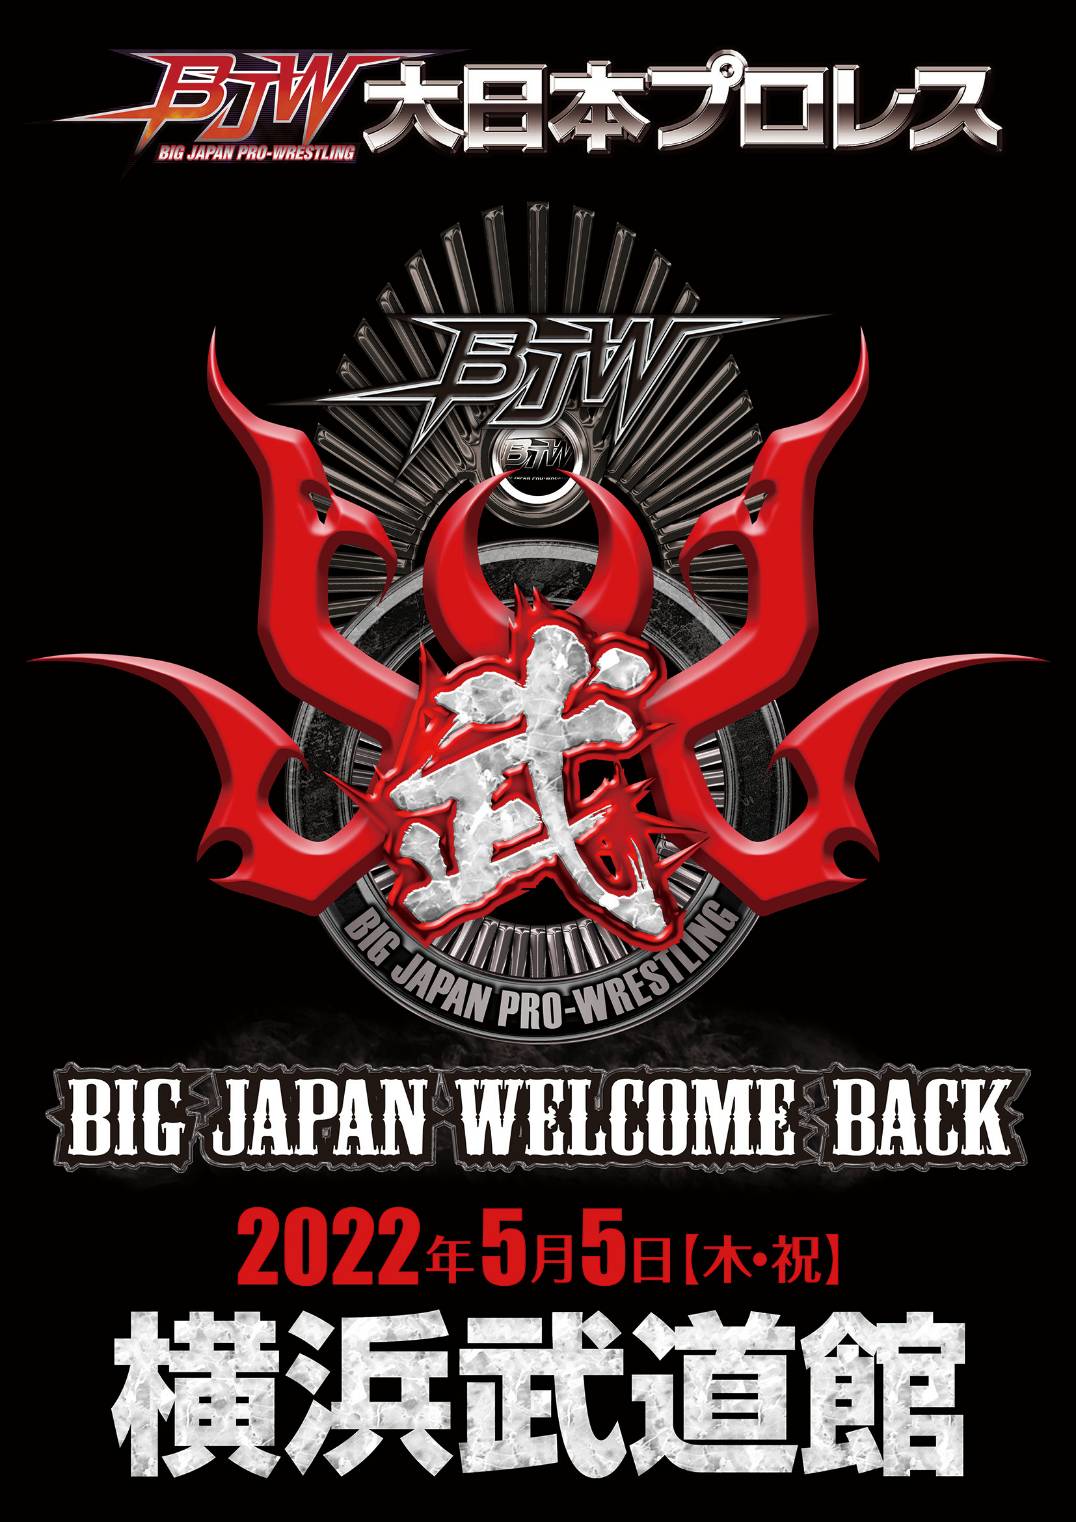 「BIG JAPAN WELCOME BACK」神奈川・横浜武道館大会